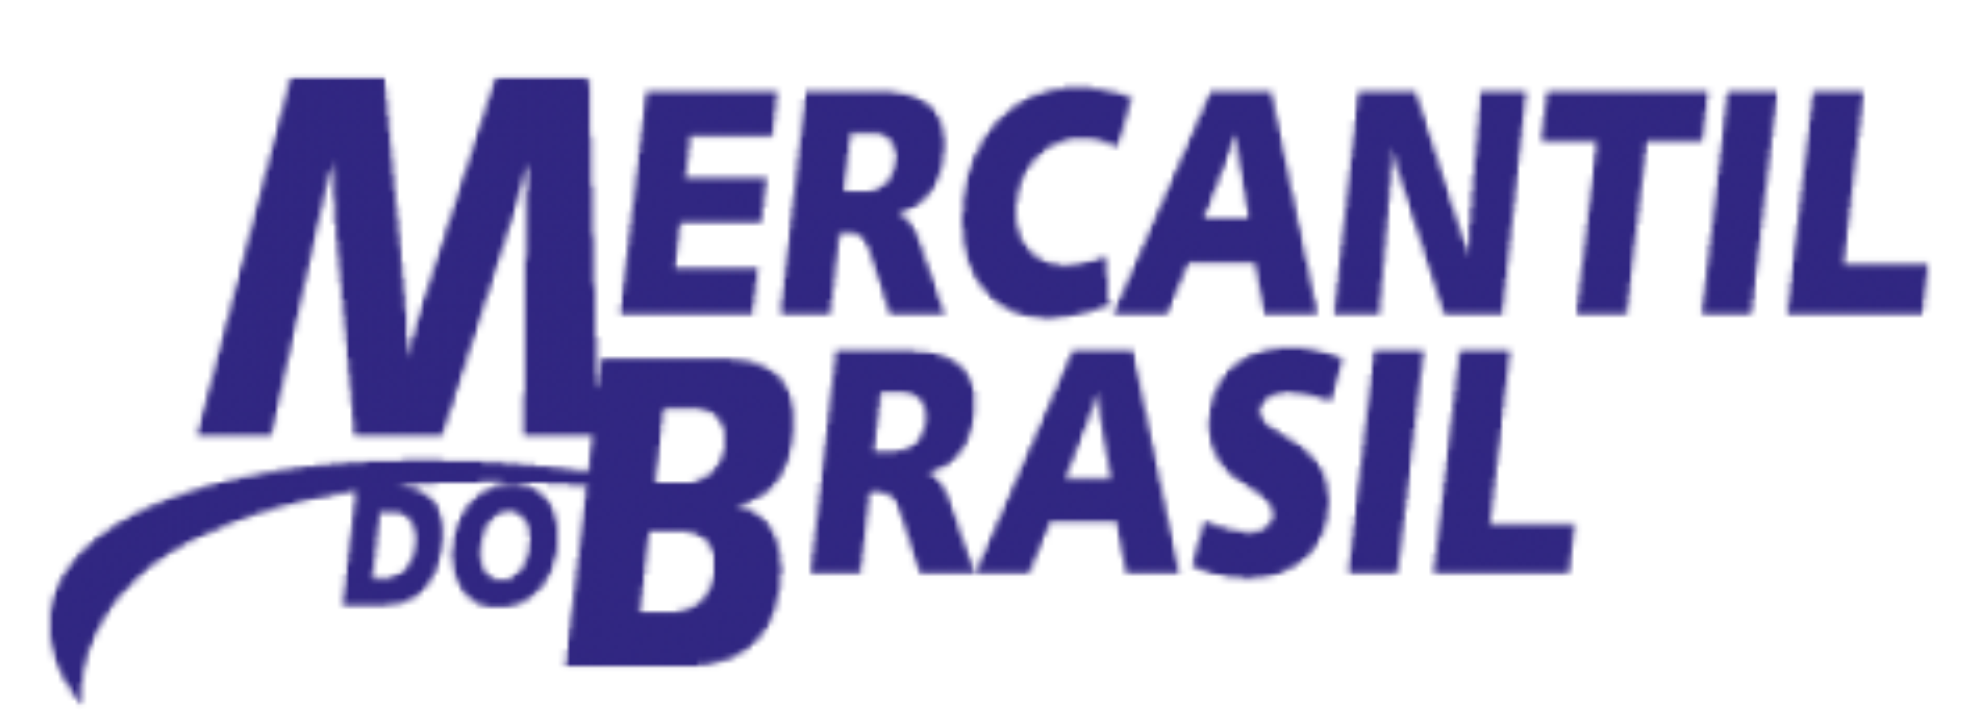 logo-mercantil